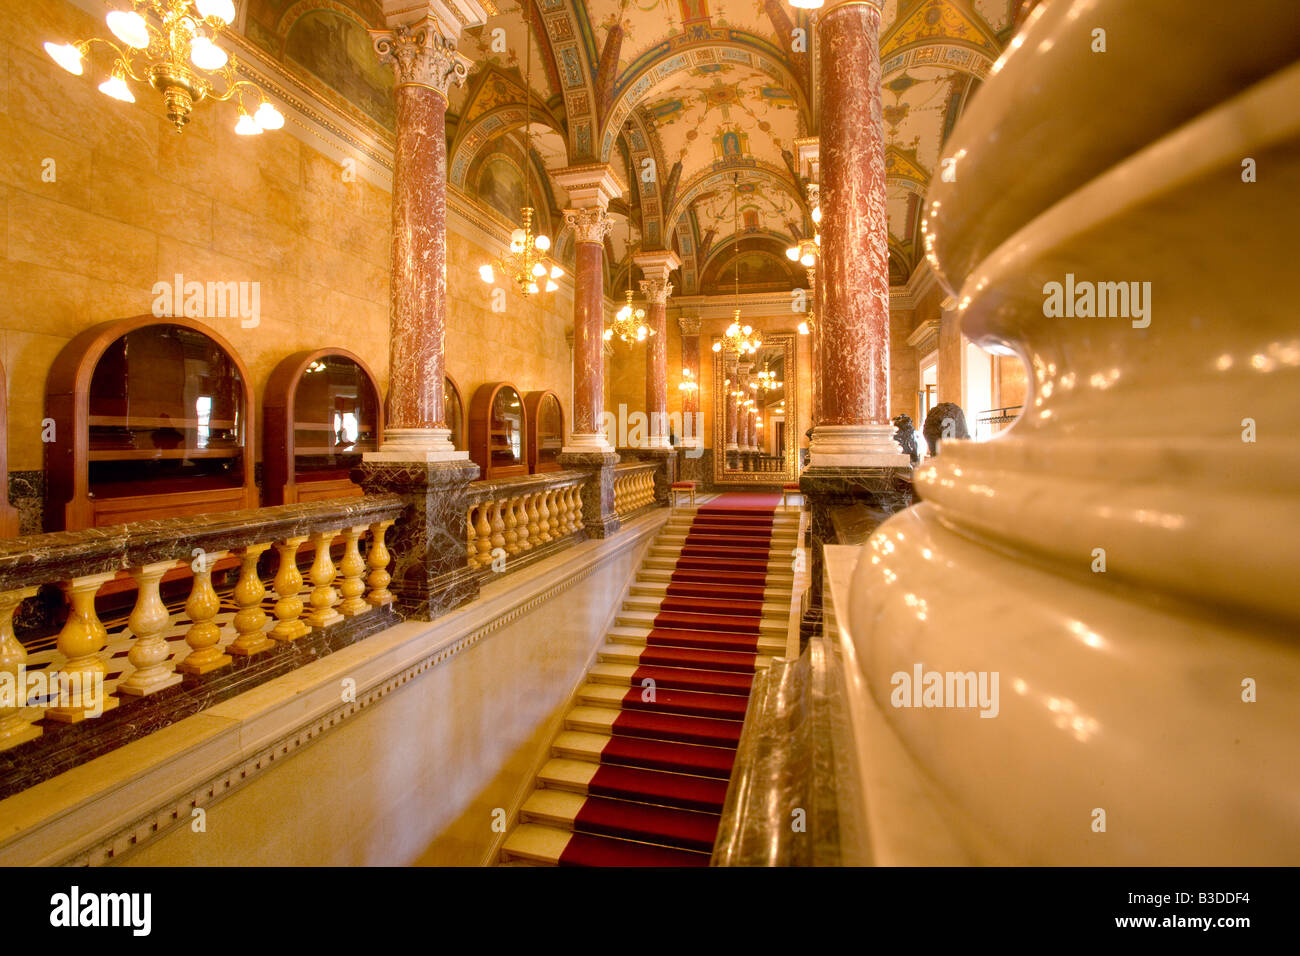 Le hall de l'Opéra de Budapest Hongrie Banque D'Images